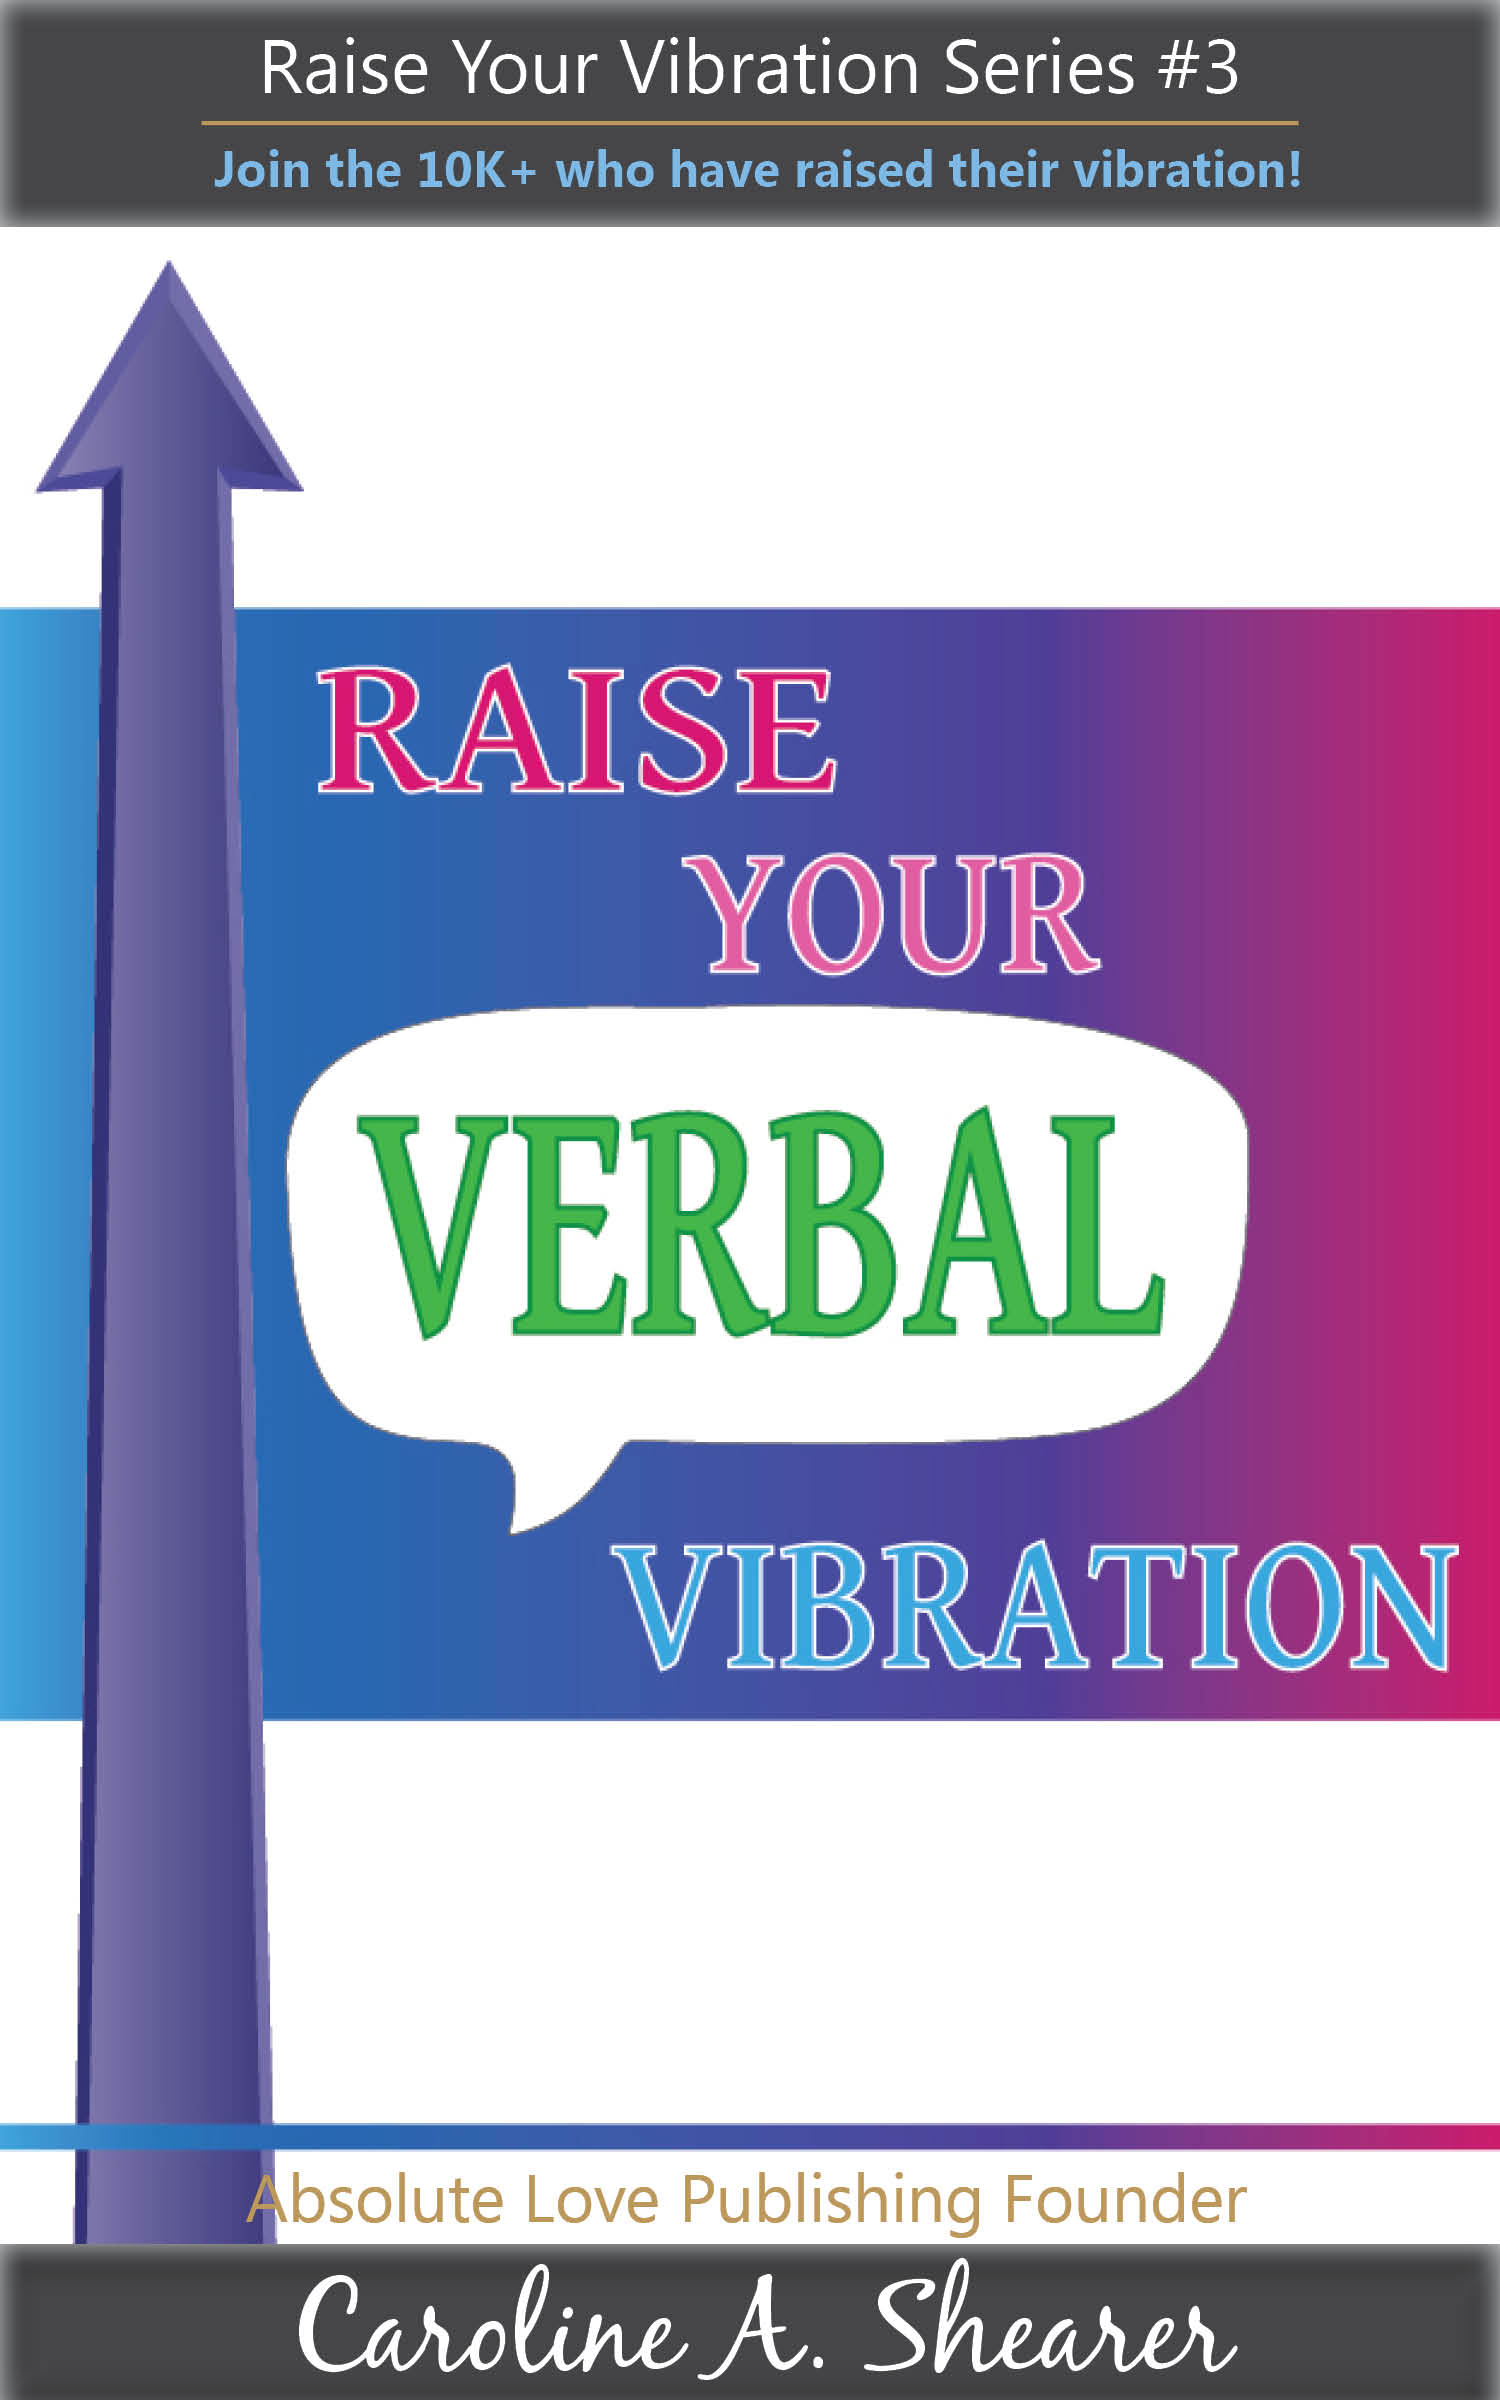 Raise Your Verbal Vibration